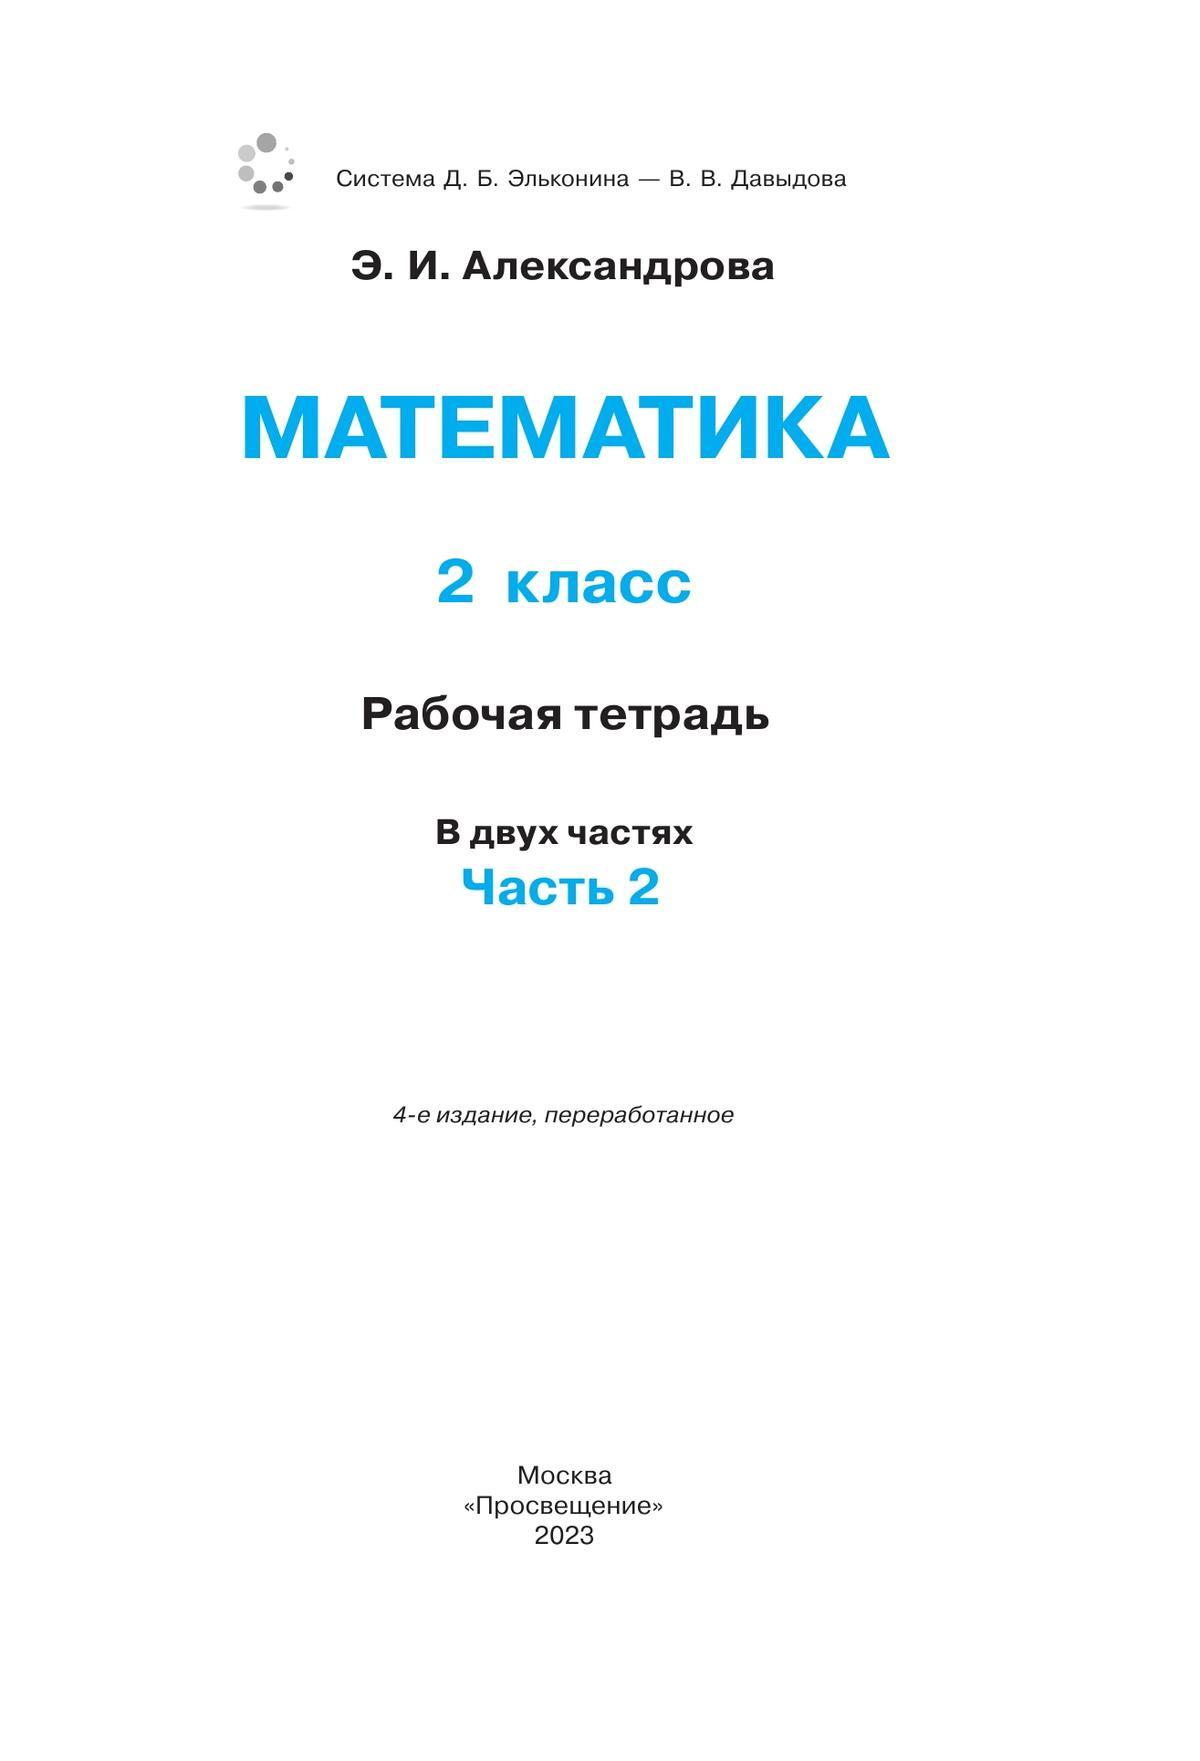 Рабочая тетрадь по математике №2. 2 класс Александрова Э.И. 2